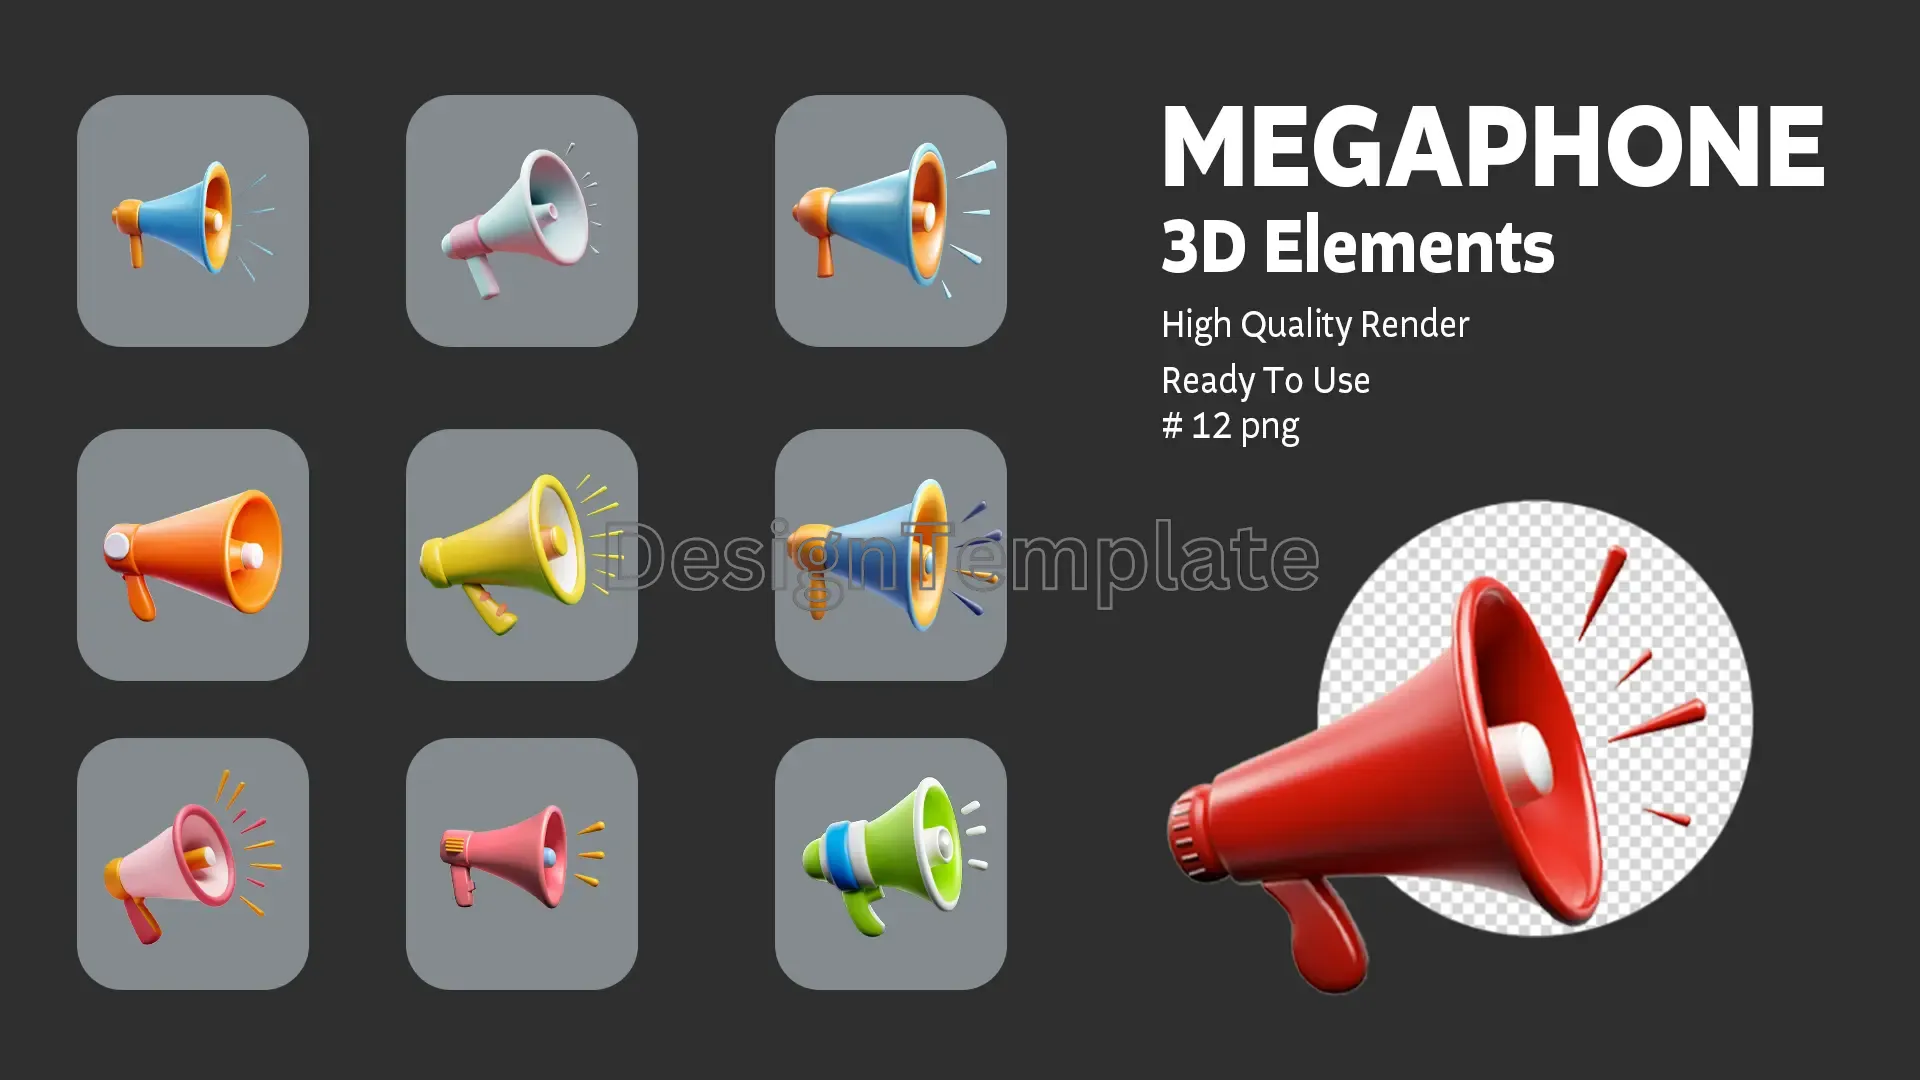 Voice Amplified Megaphone 3D Elements Collection image